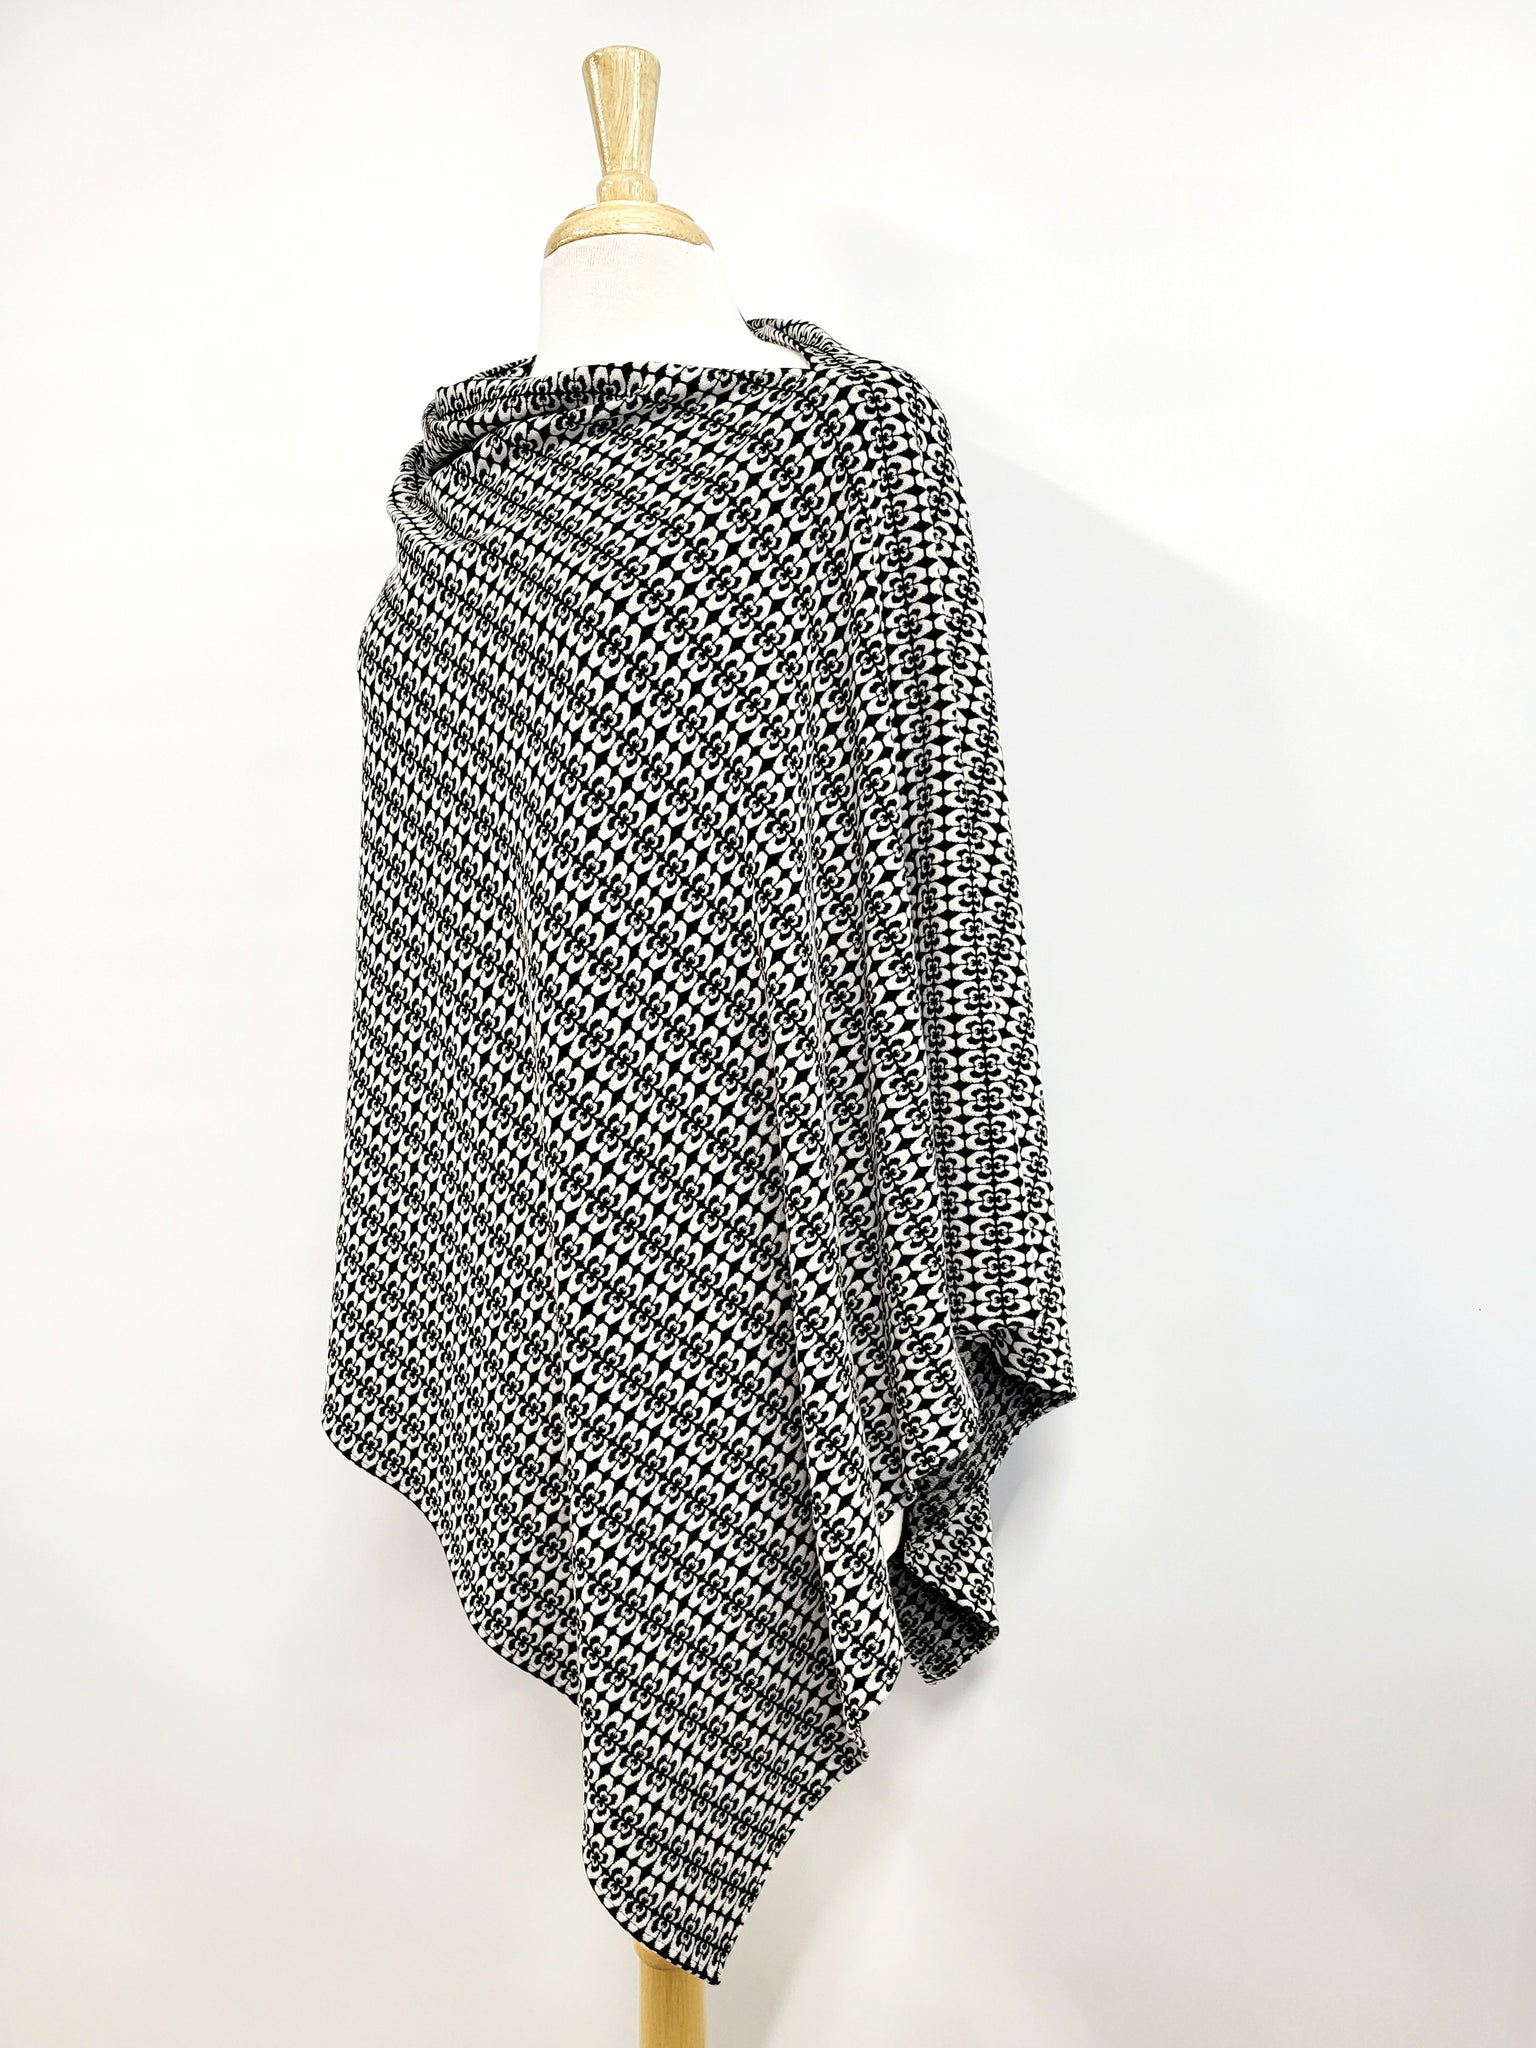 Poncho long en tricot à motif blanc et noir.